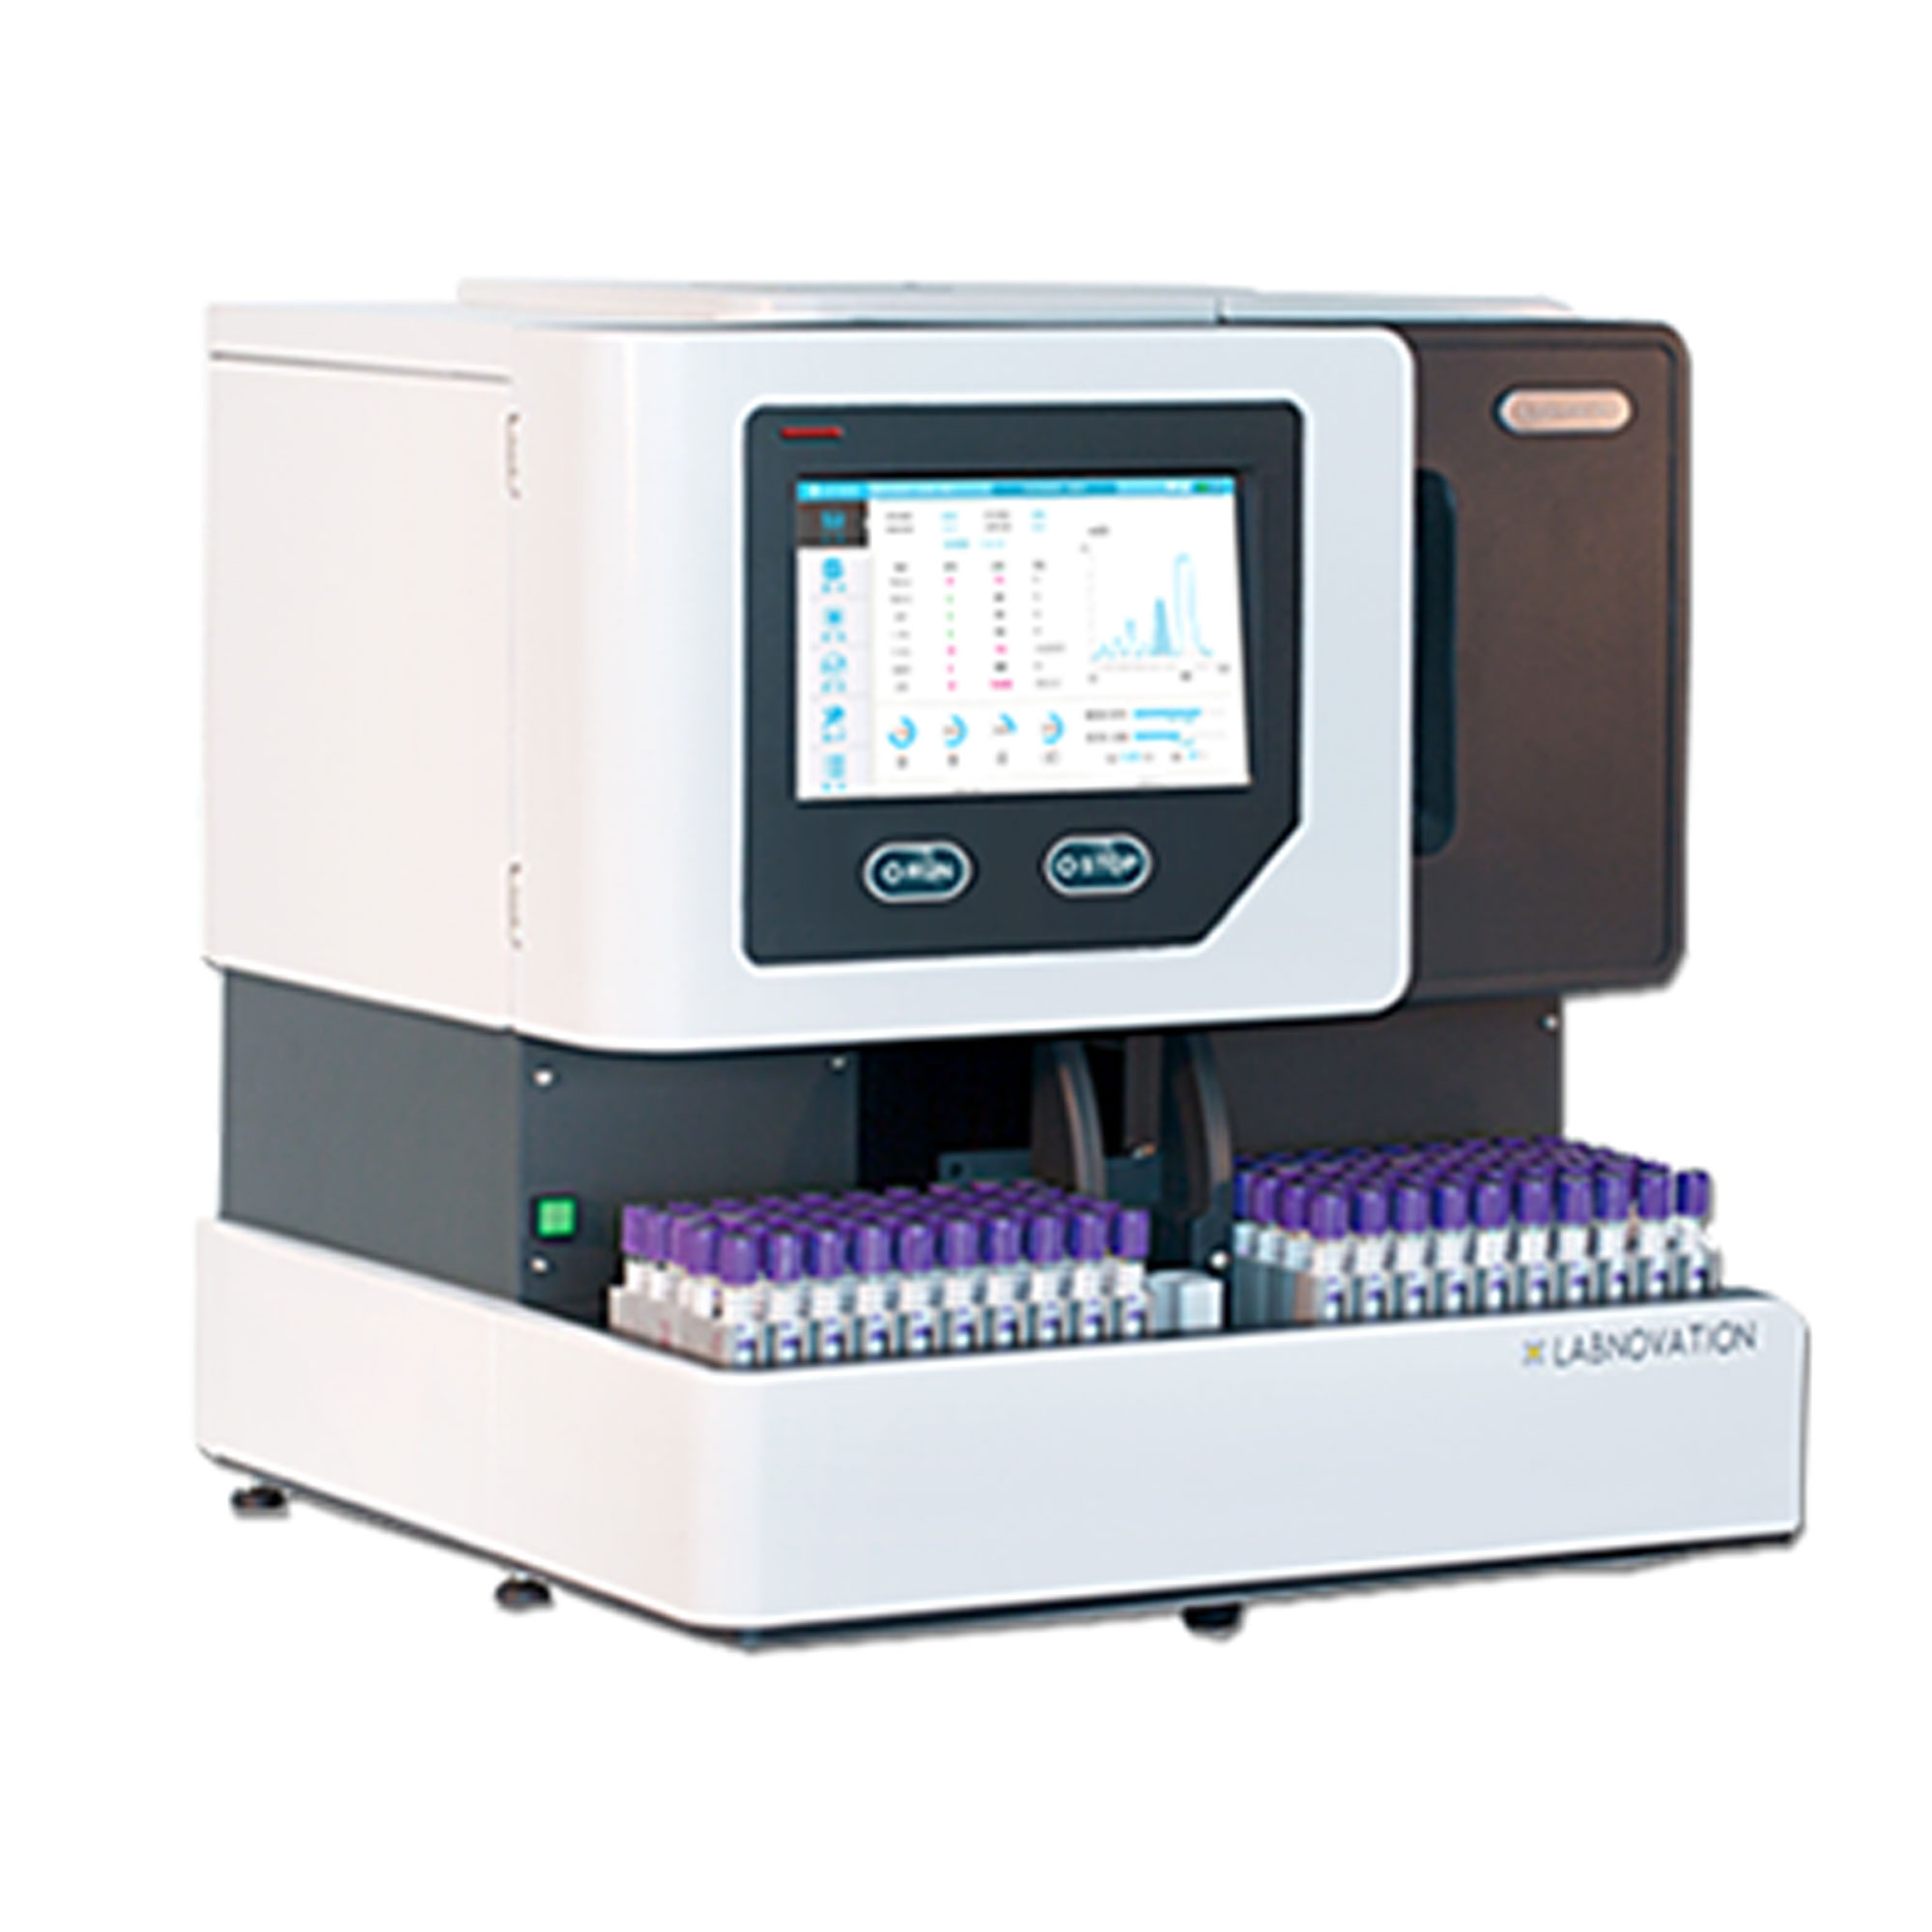 دستگاه ای وان سی - HBA1C-LD600 - LABLOVATION - دستگاه - هماتولوژی و بانک خون - آریا تشخیص پارس